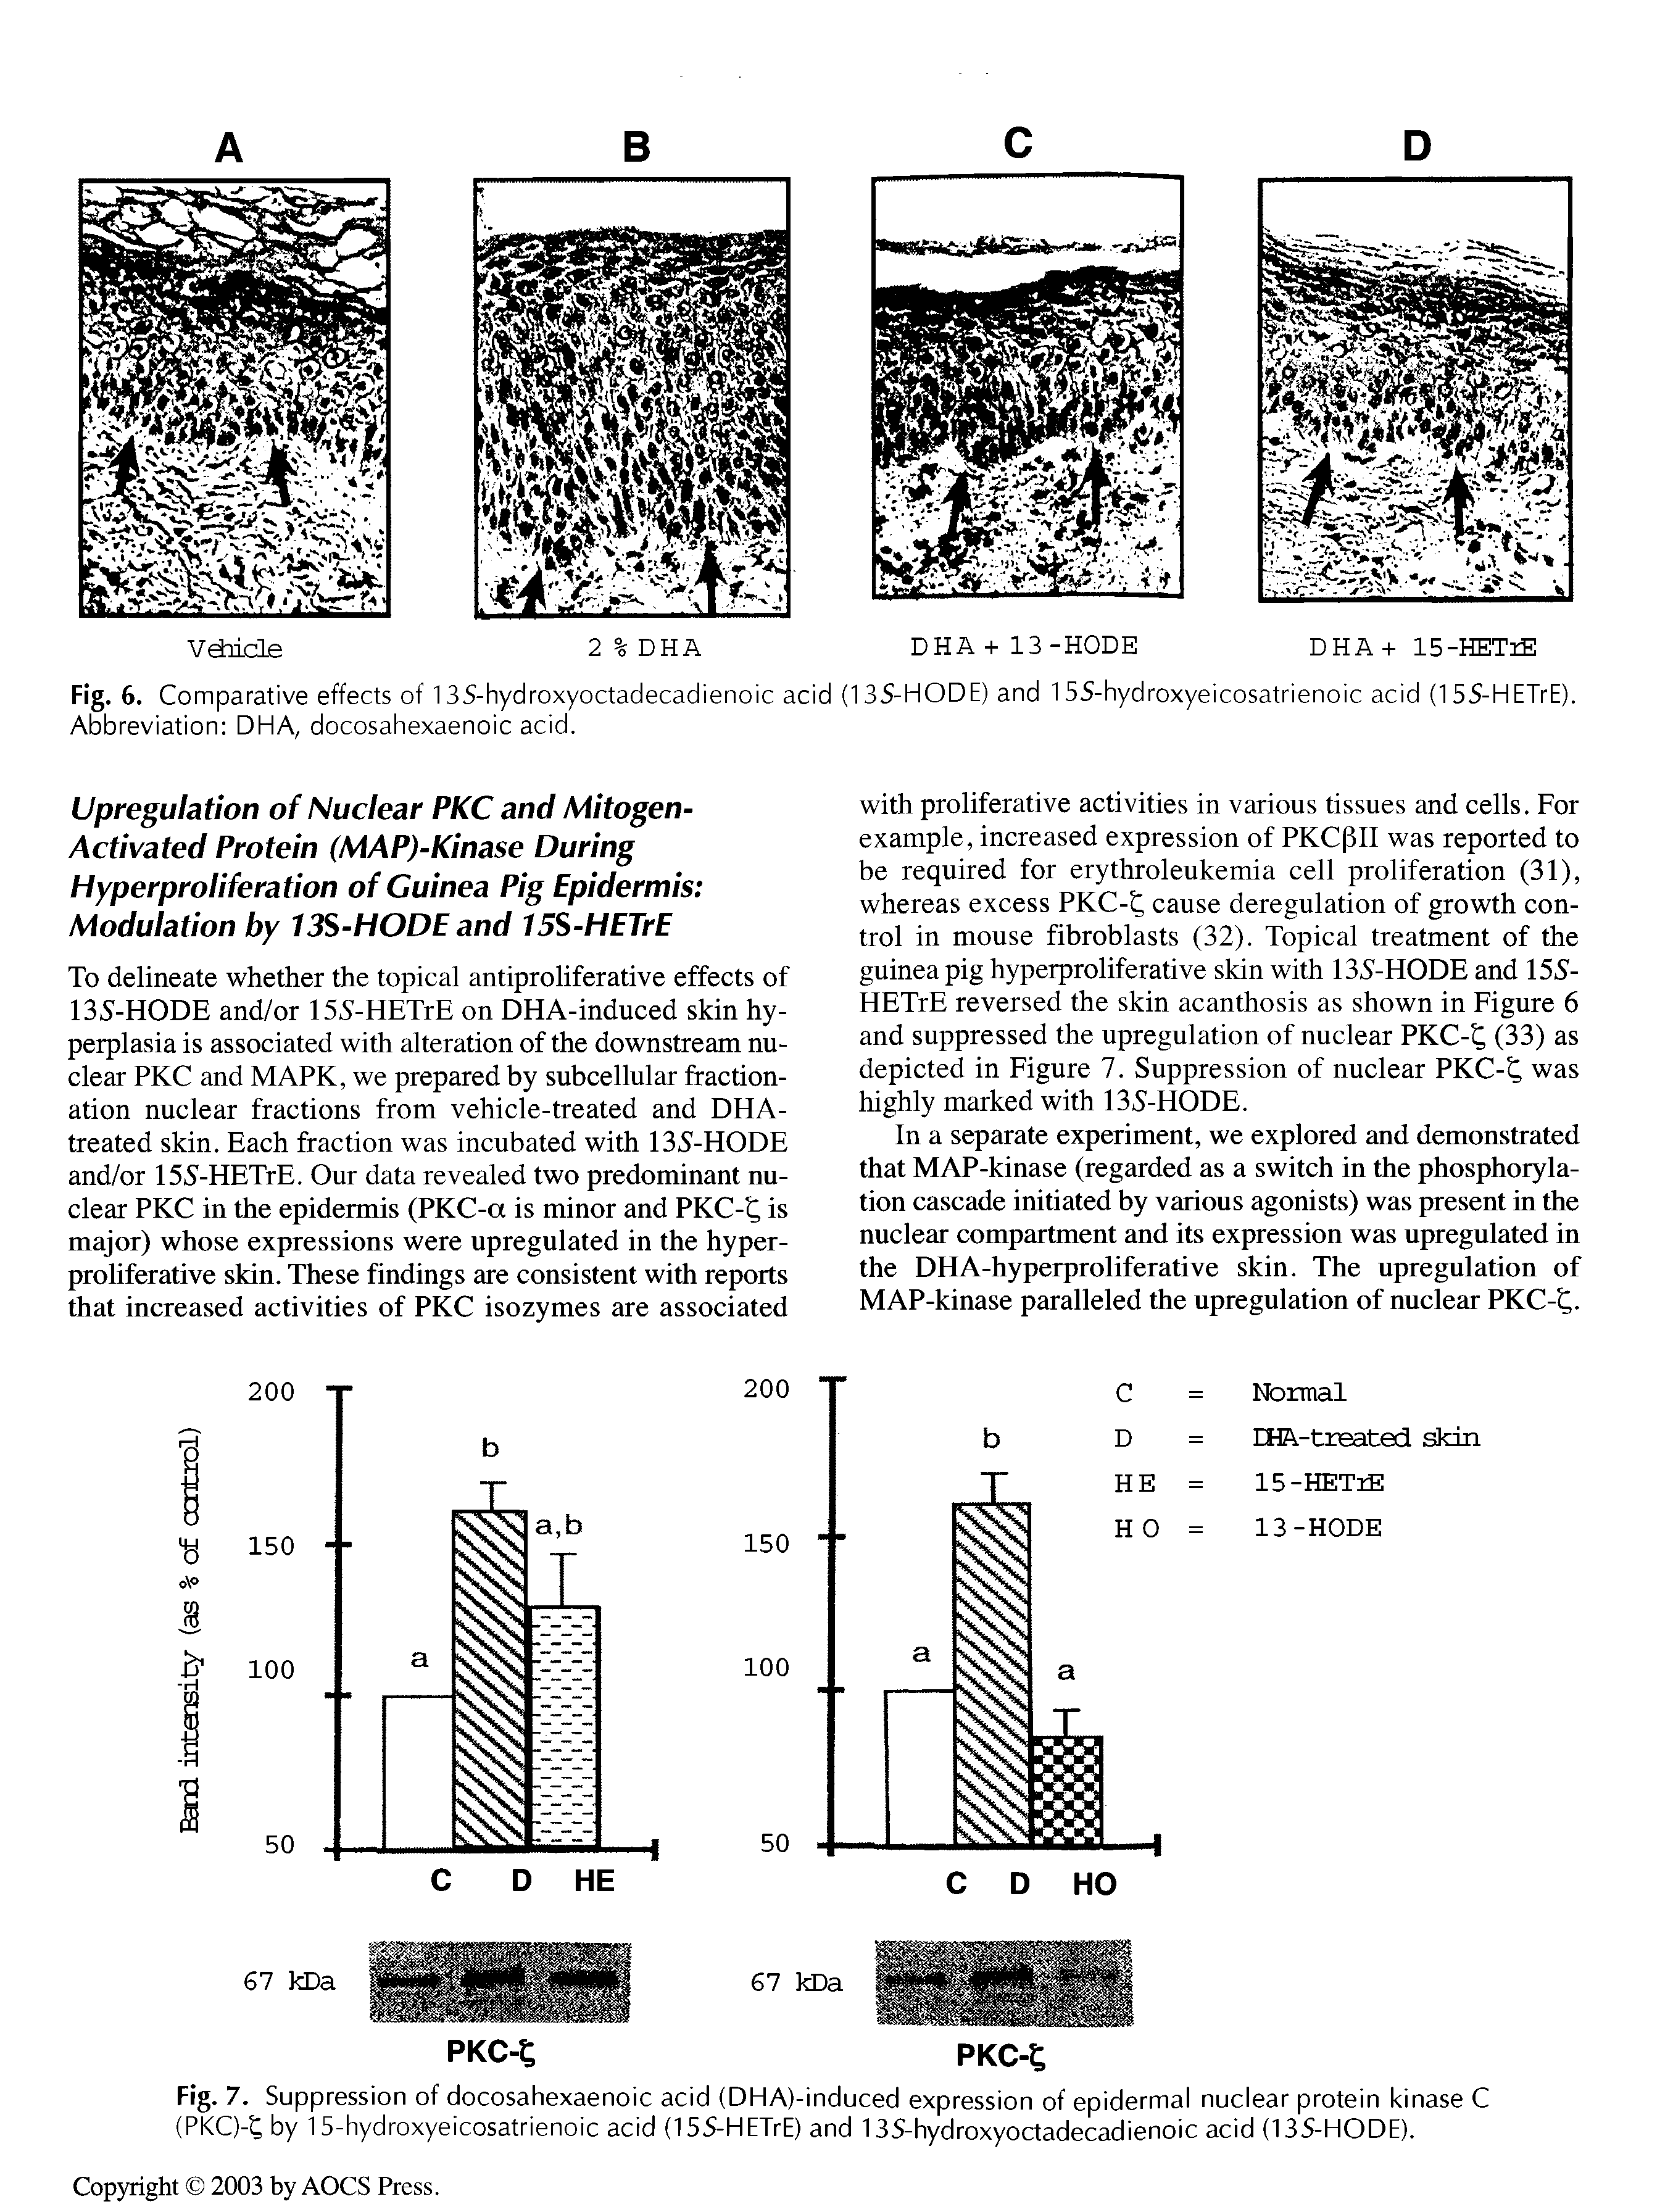 Fig. 6. Comparative effects of 135-hydroxyoctadecadienoic acid (135-HODE) and 15S-hydroxyeicosatrienoic acid (155-HETrE). Abbreviation DHA, docosahexaenoic acid.